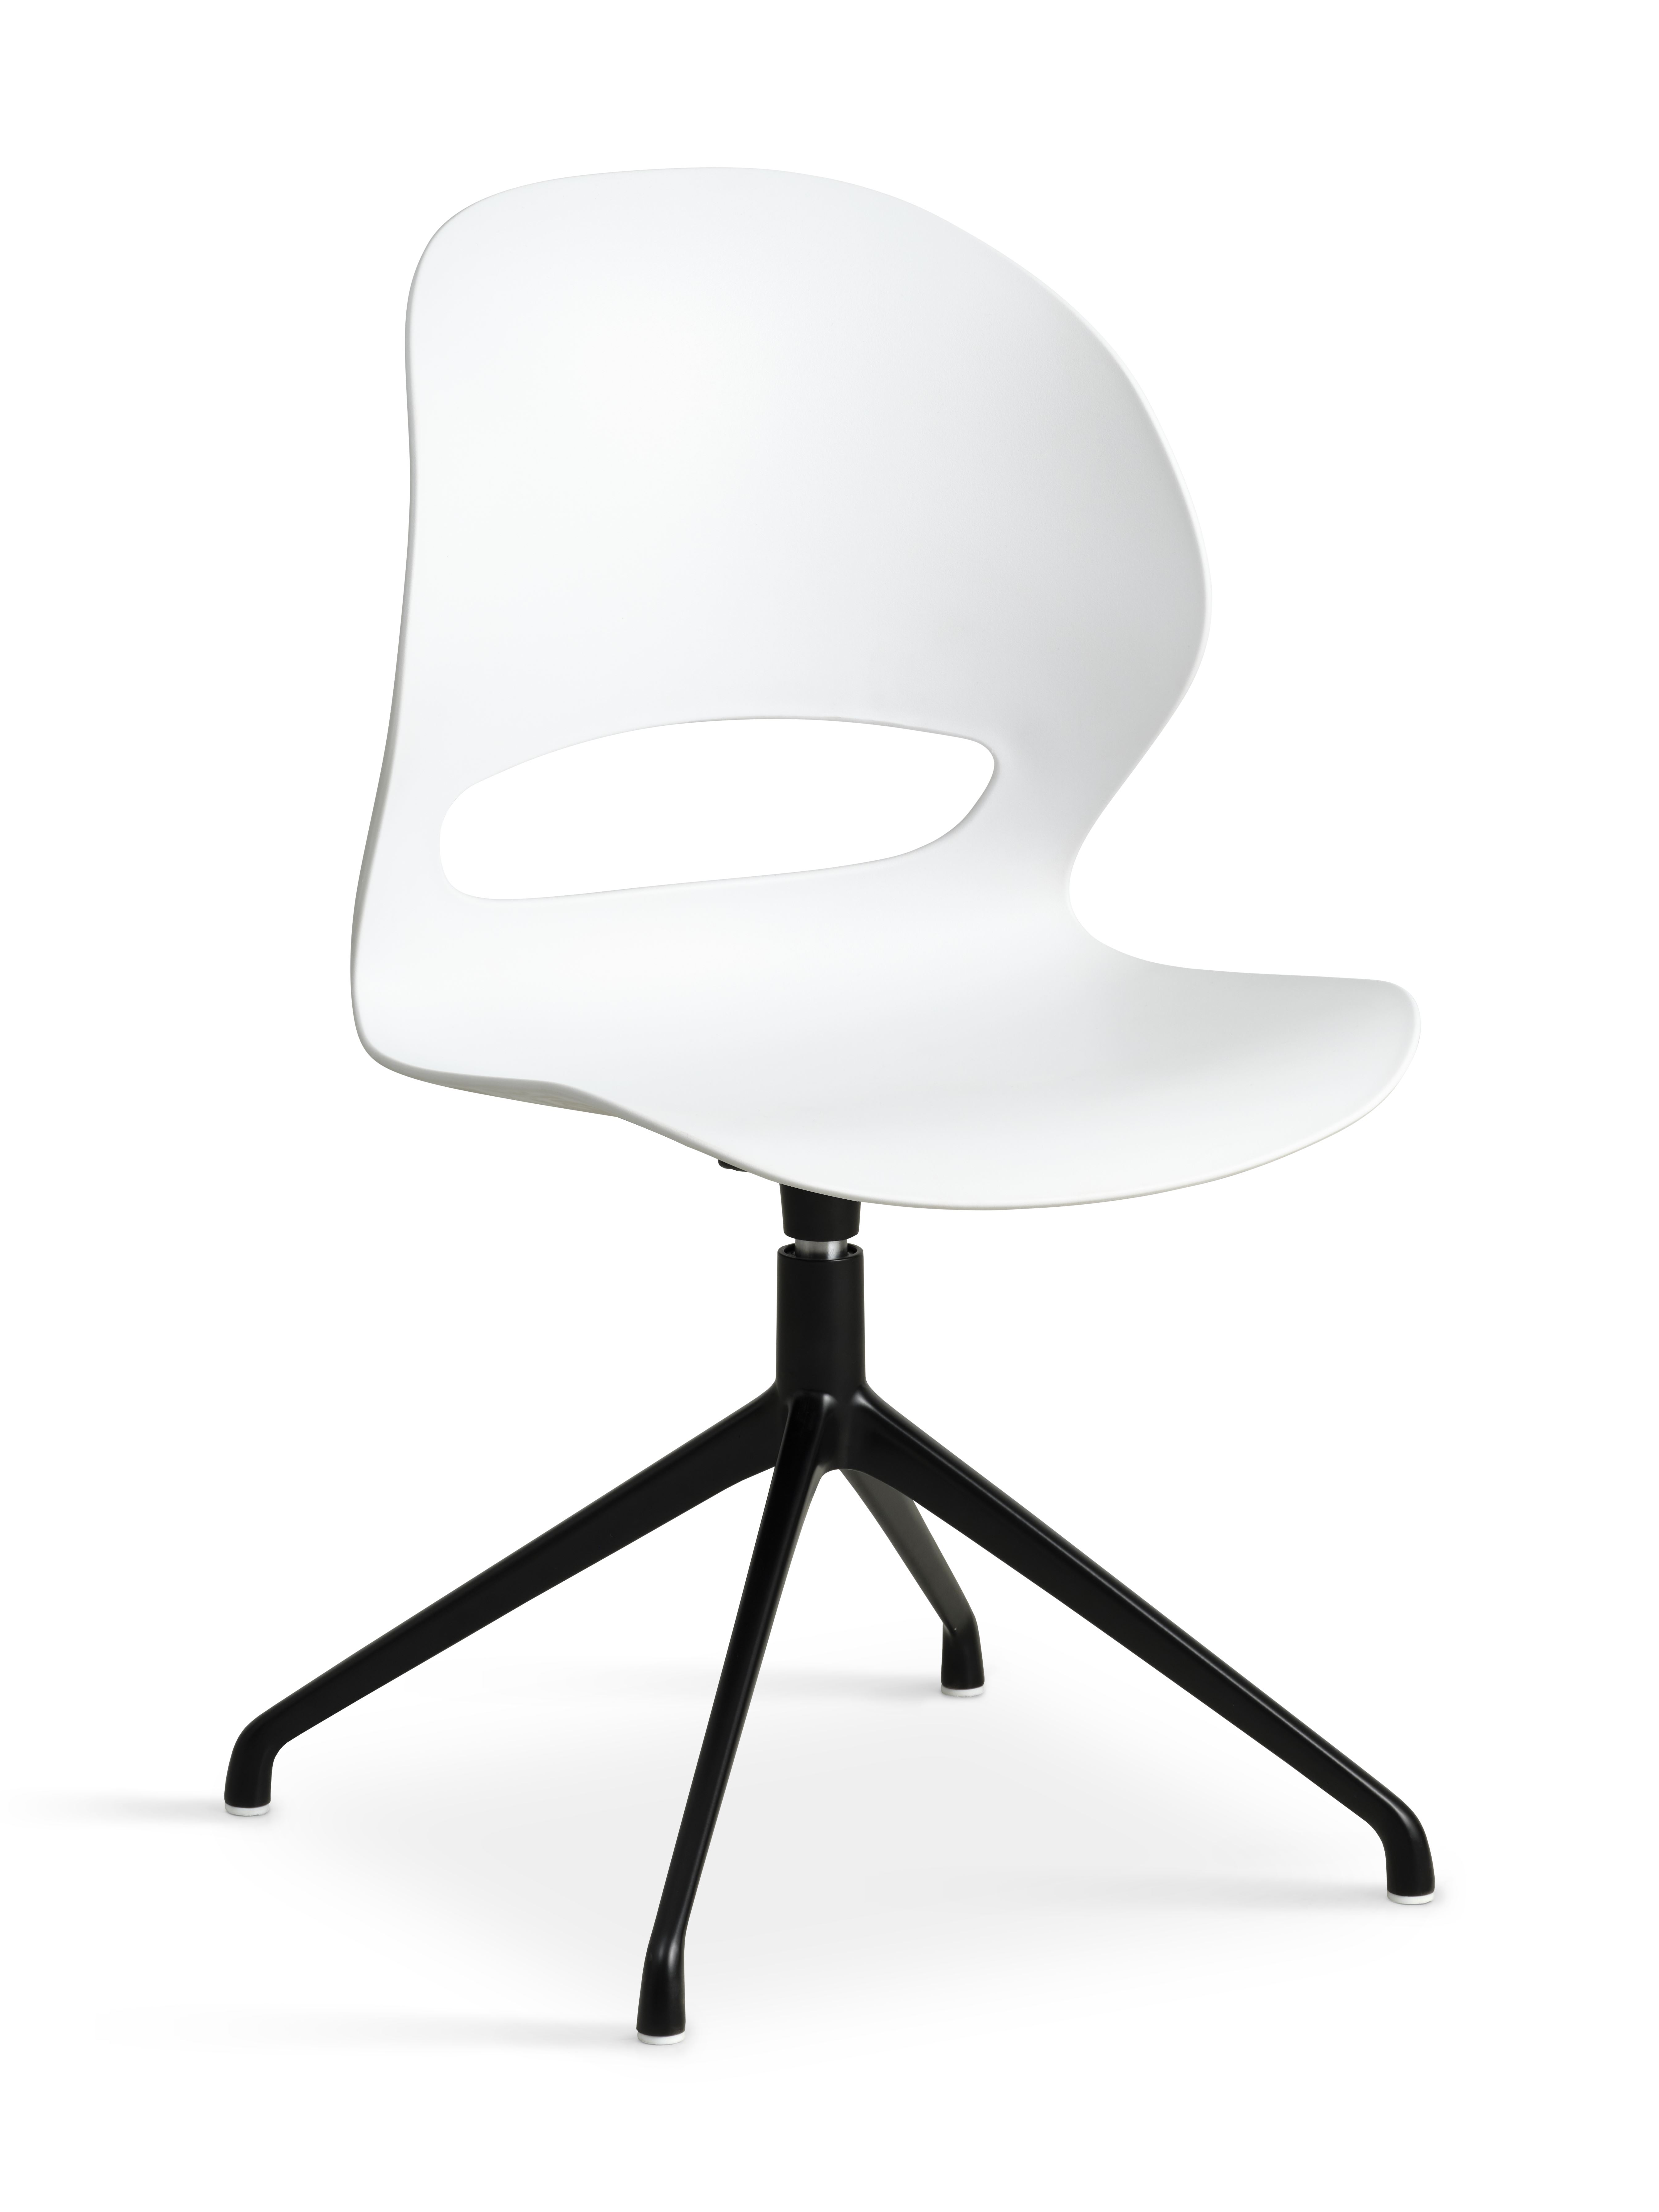 Linea spisebordsstol, m. drejefunktion - hvid PVC og sort metal